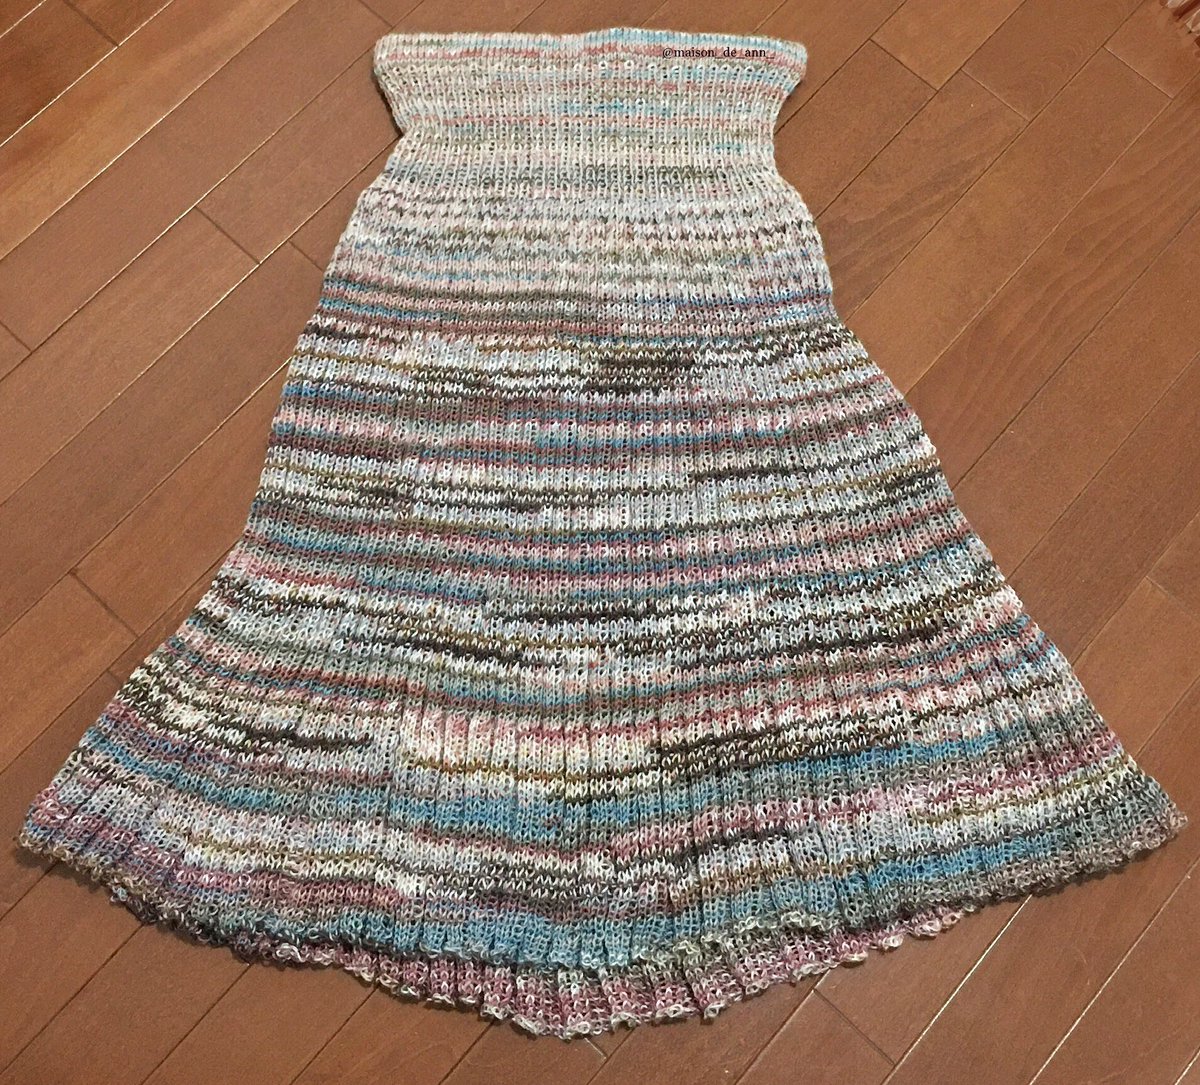 今回は以前に編んだニットスカートの別カットです📷

#handmade
#ハンドメイド
#手づくり
#手作り
#手仕事
#てしごと
#knitting
#ニット
#輪針
#棒針
#ソックヤーン
#knittinglove
#sockyarn
#ニットスカート
#スカート
#knitskirt 
#skirt